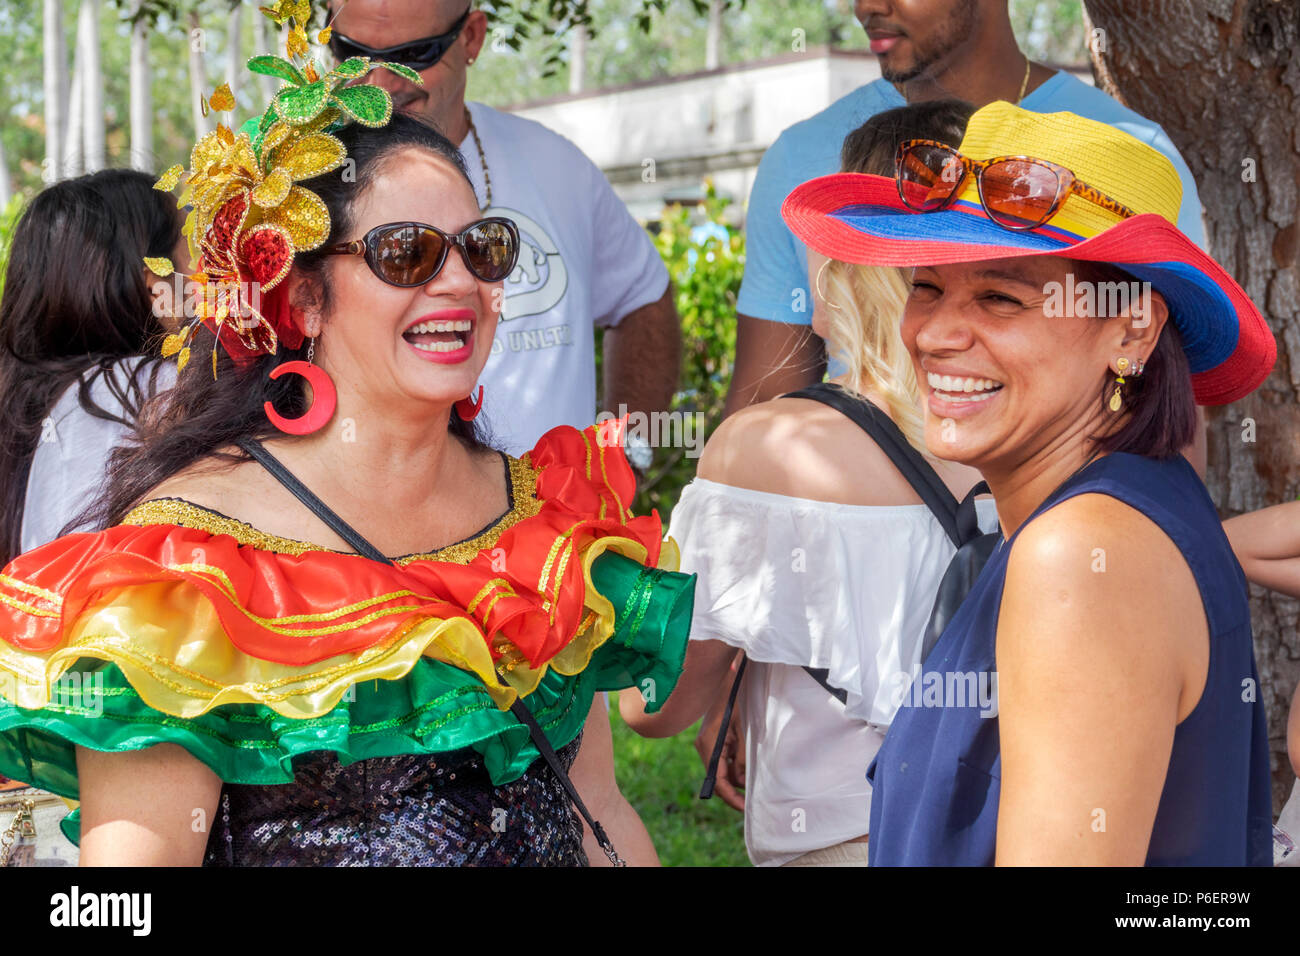 Floride, Coral Gables, Festival culturel hispanique, événement latino-américain, danseur interprète, costume typique colombien, Baile del Garabato, Barranquilla Carniv Banque D'Images